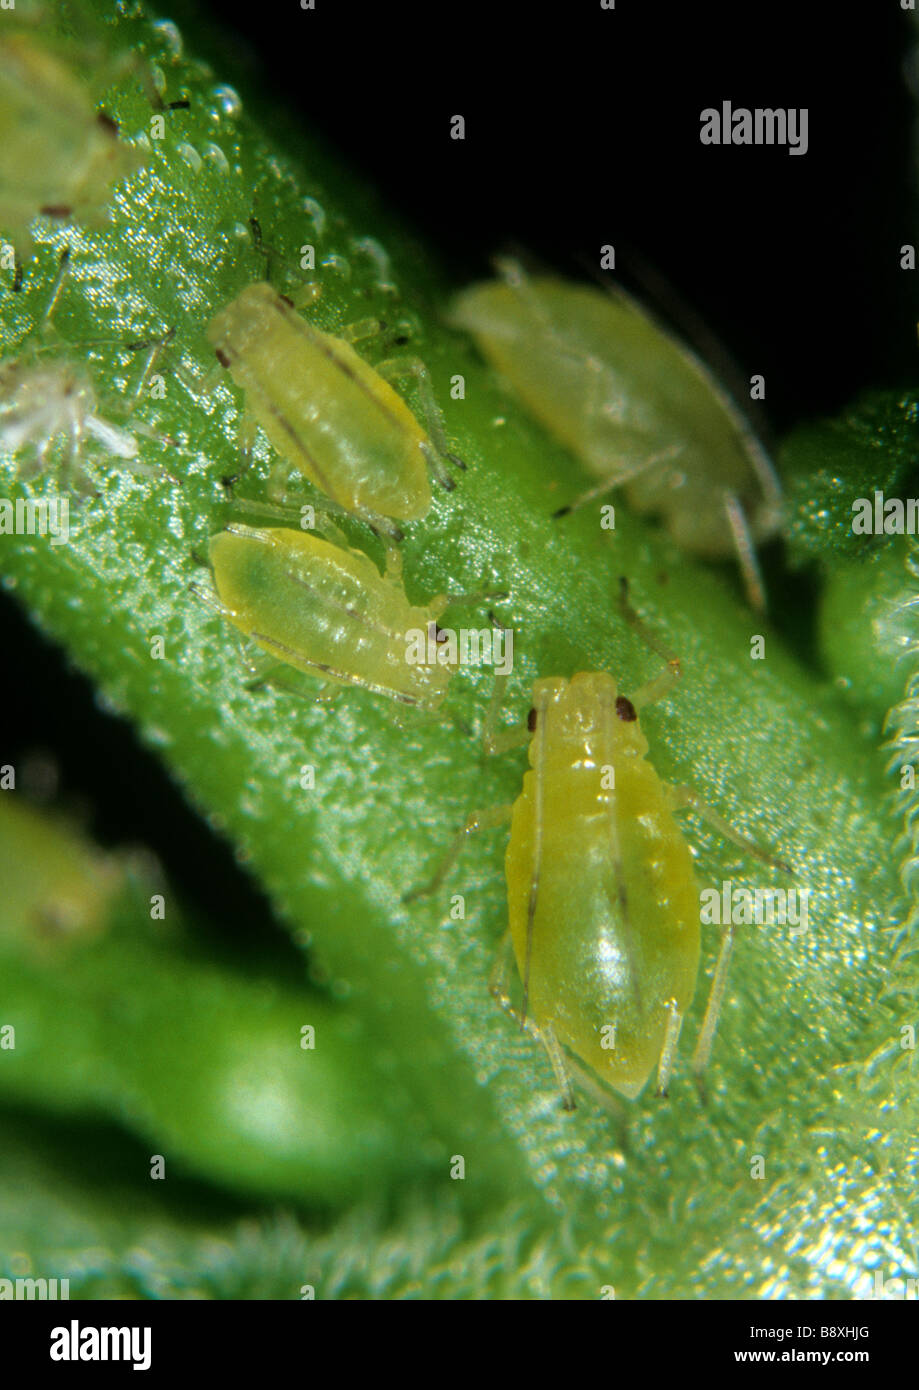 Mint aphid Ovatus crataegarius adult juveniles on mint leaf Stock Photo